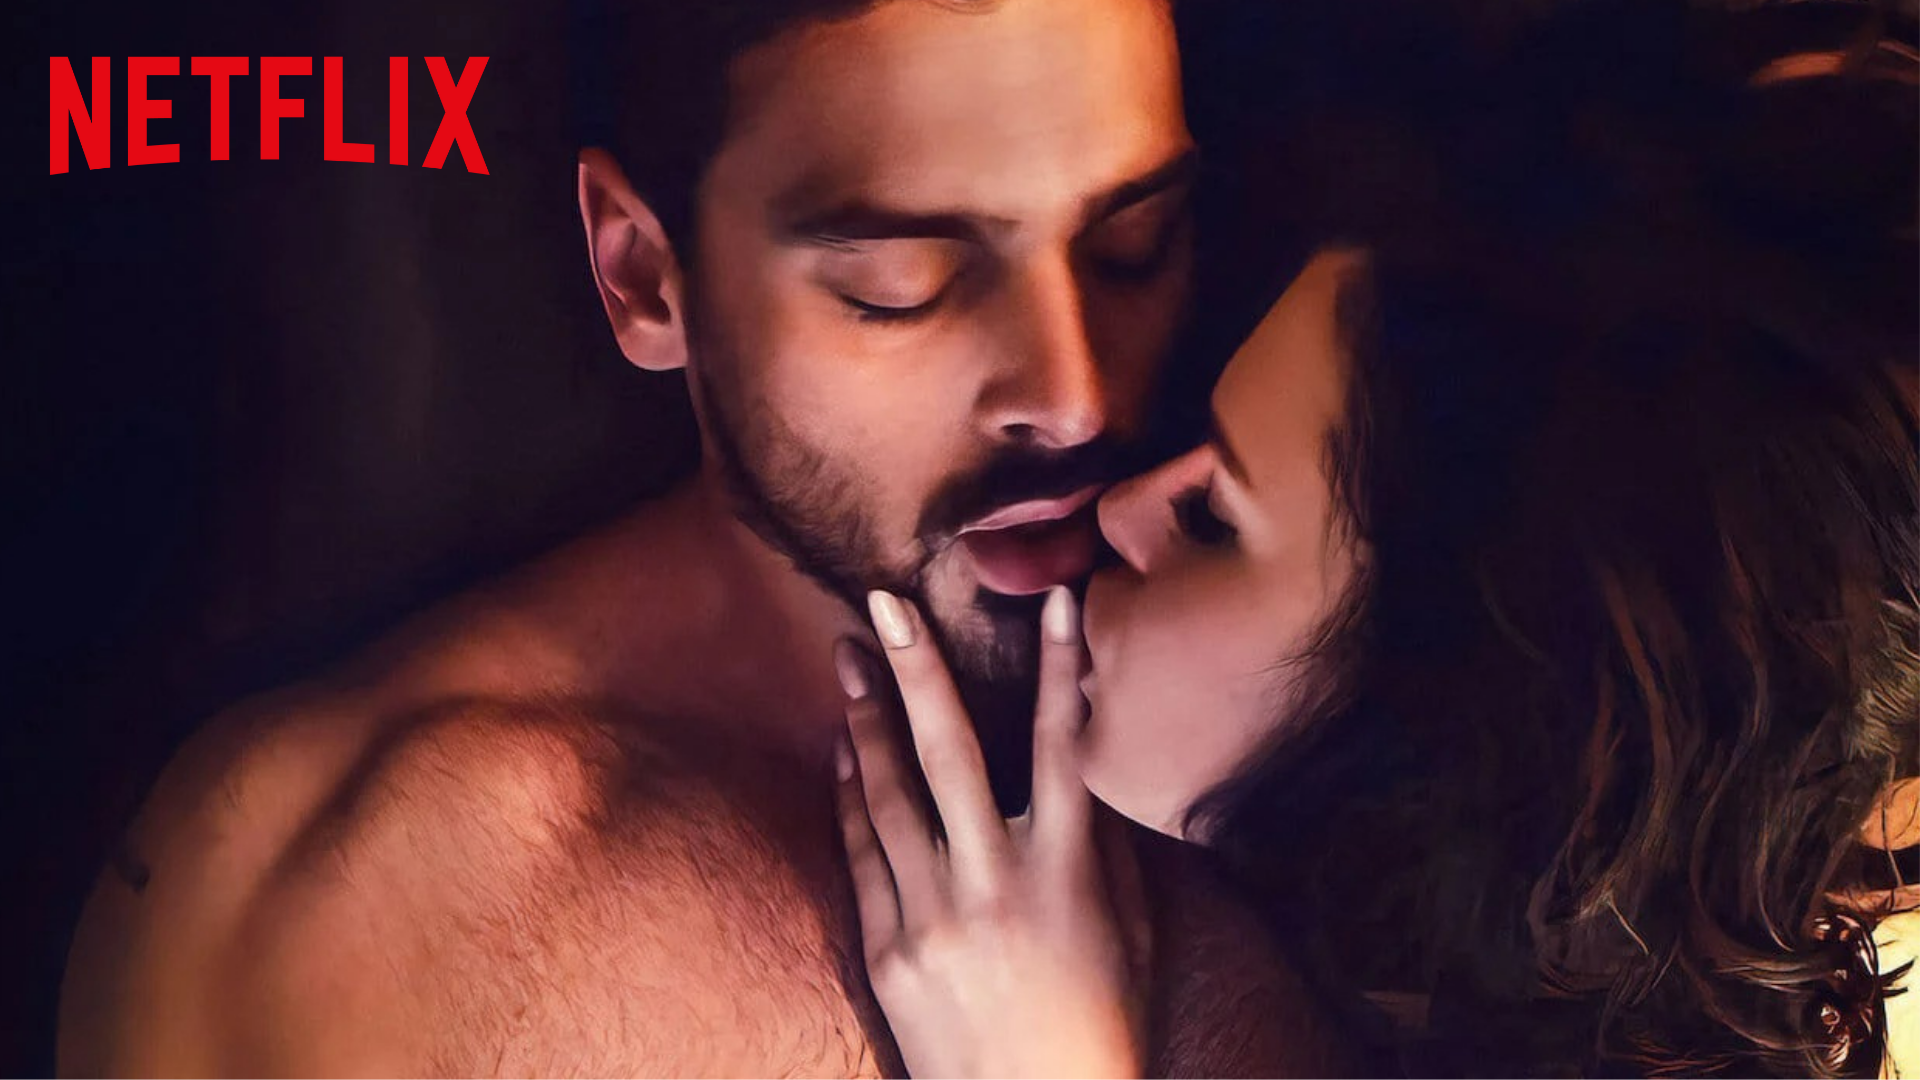 365 jours » : Sur Netflix, un film polonais qui érotise le viol